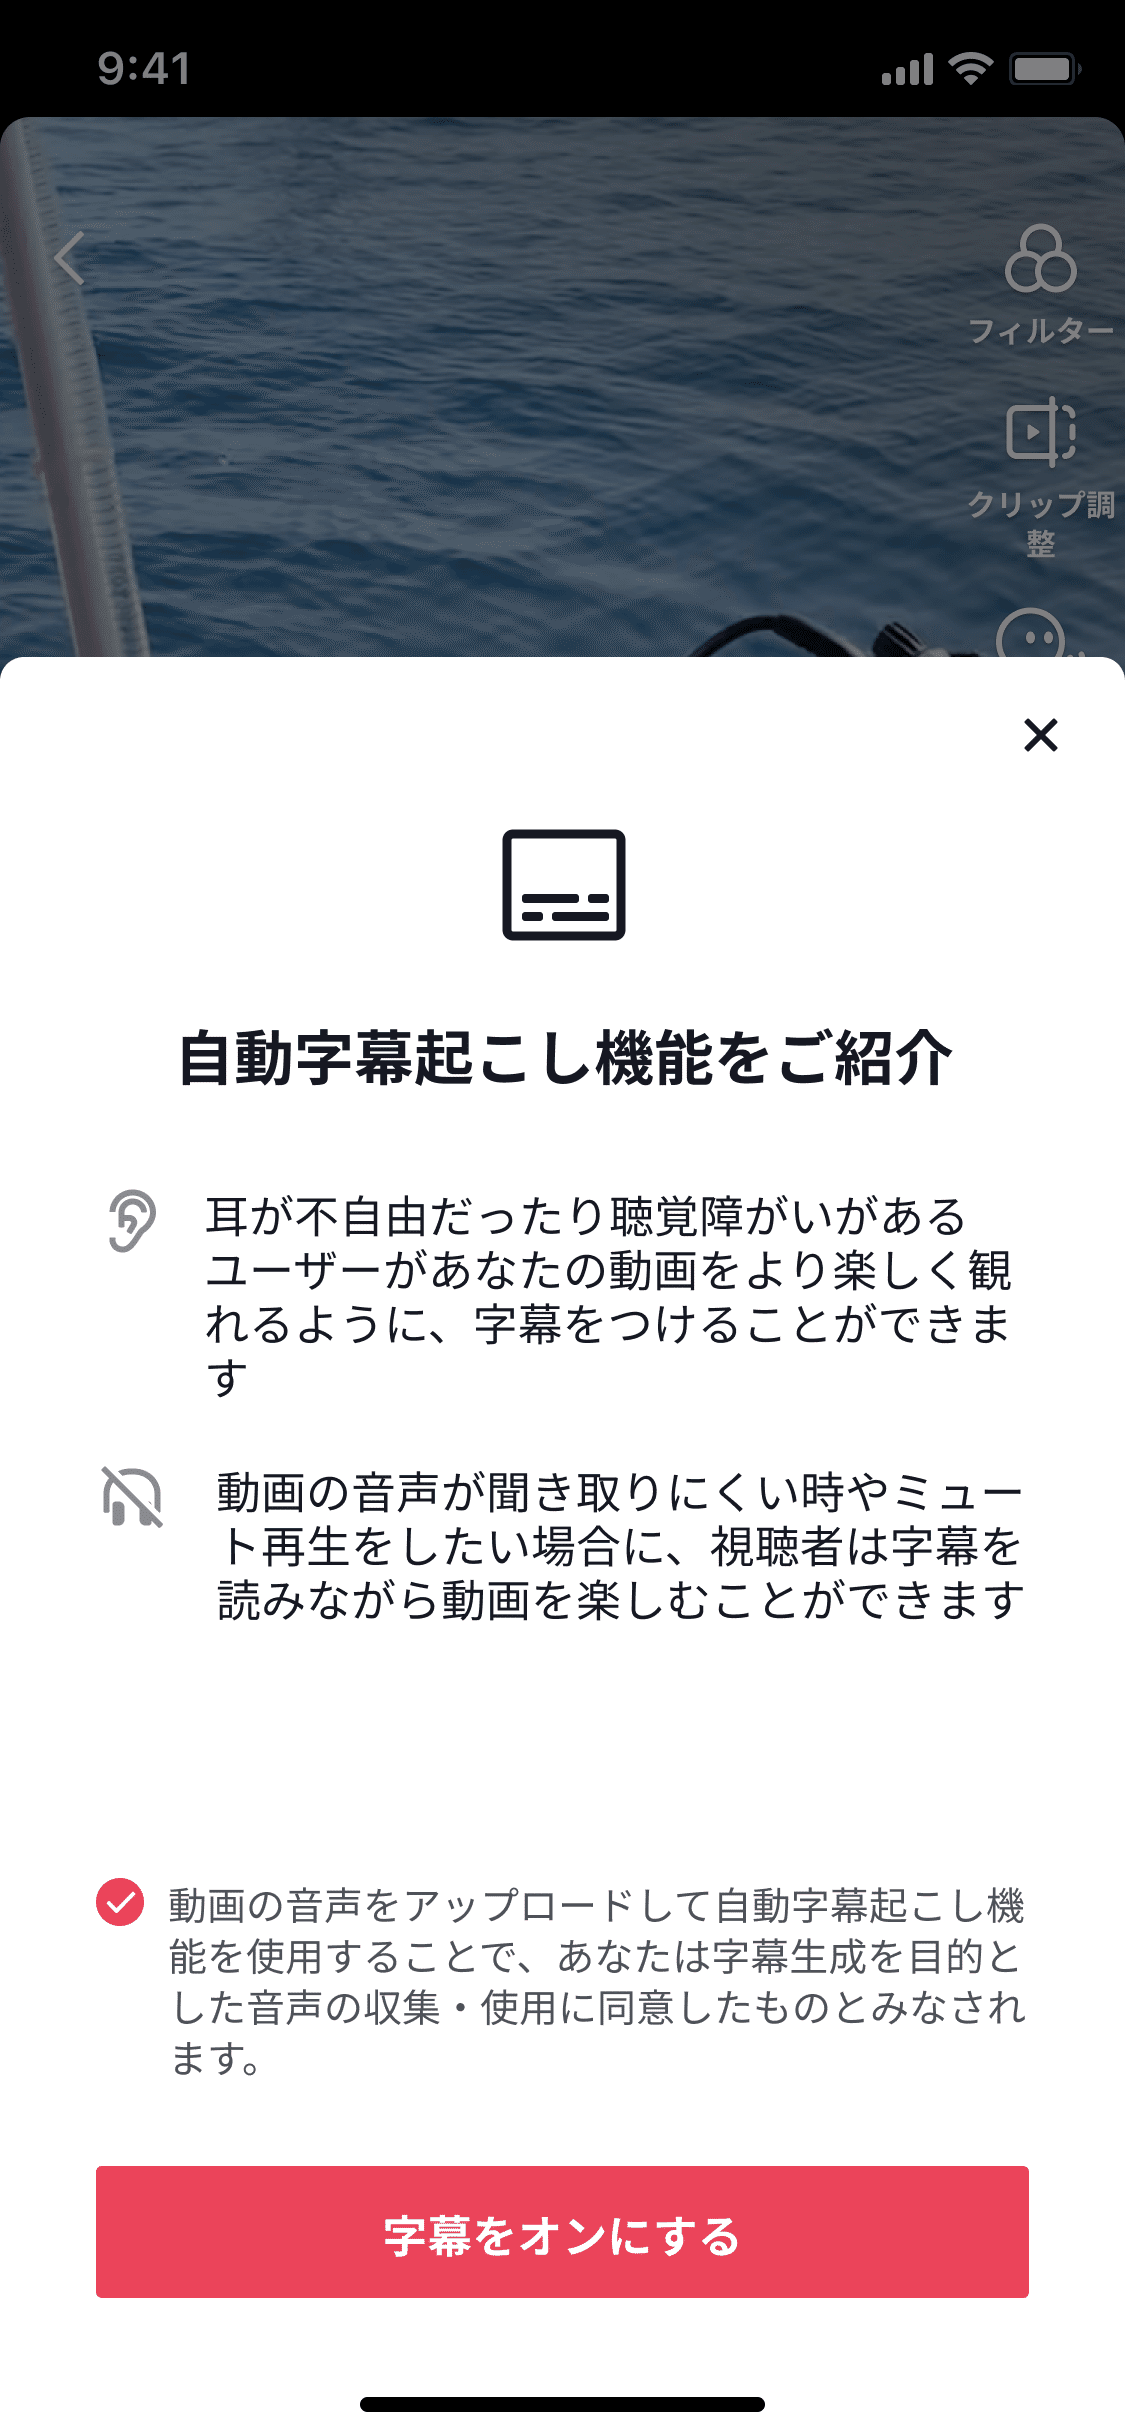 自動字幕起こし機能 の提供開始 Tiktok Japan 公式 ティックトック Note